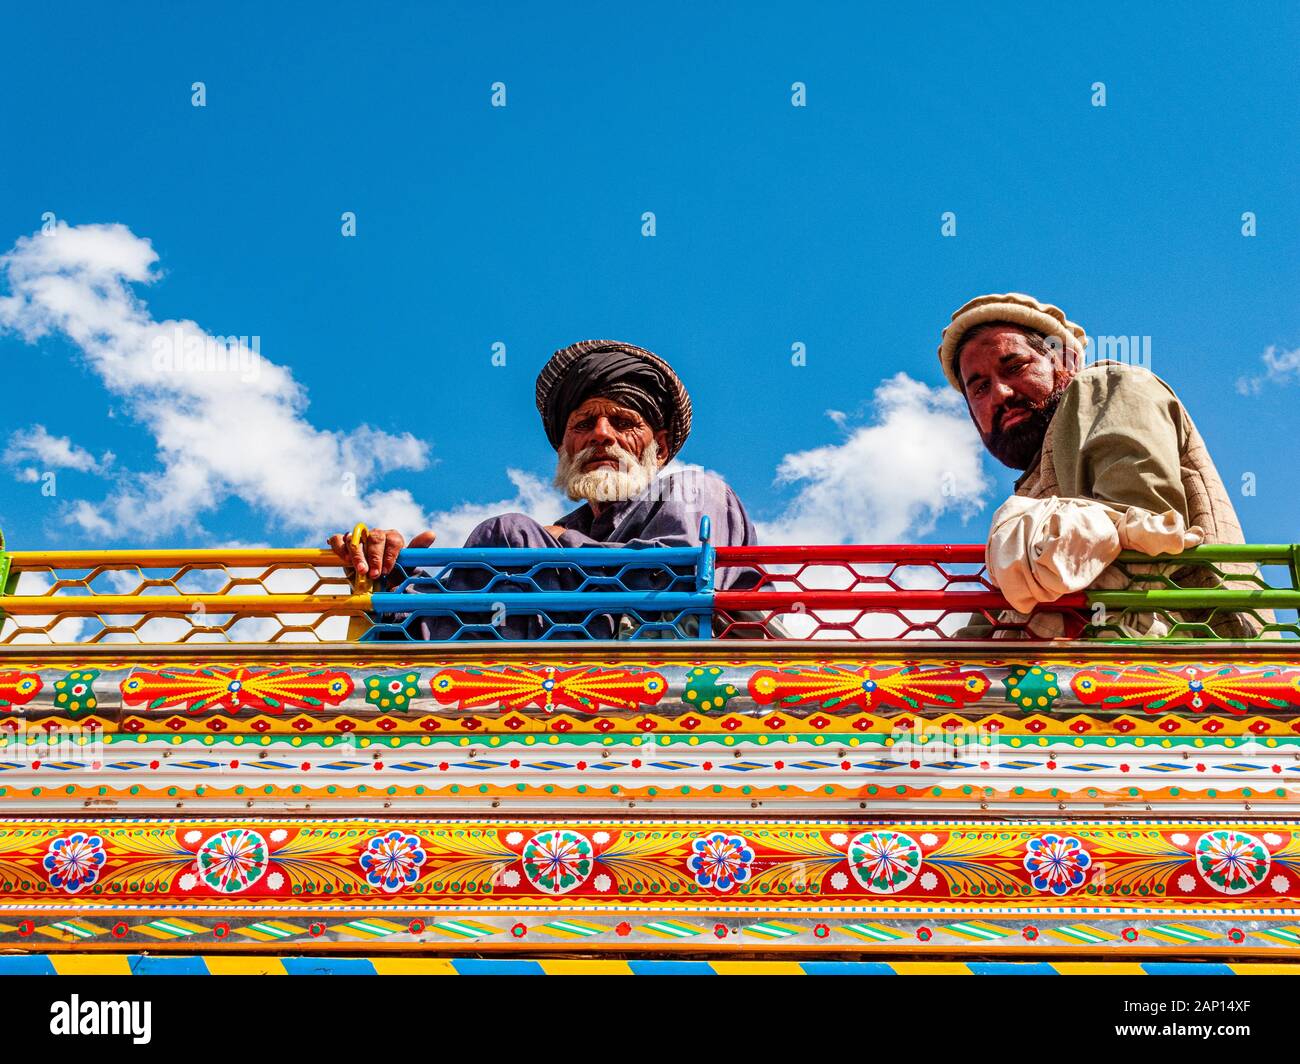 Deux hommes sont assis sur le toit d'un bus coloré et peint Banque D'Images